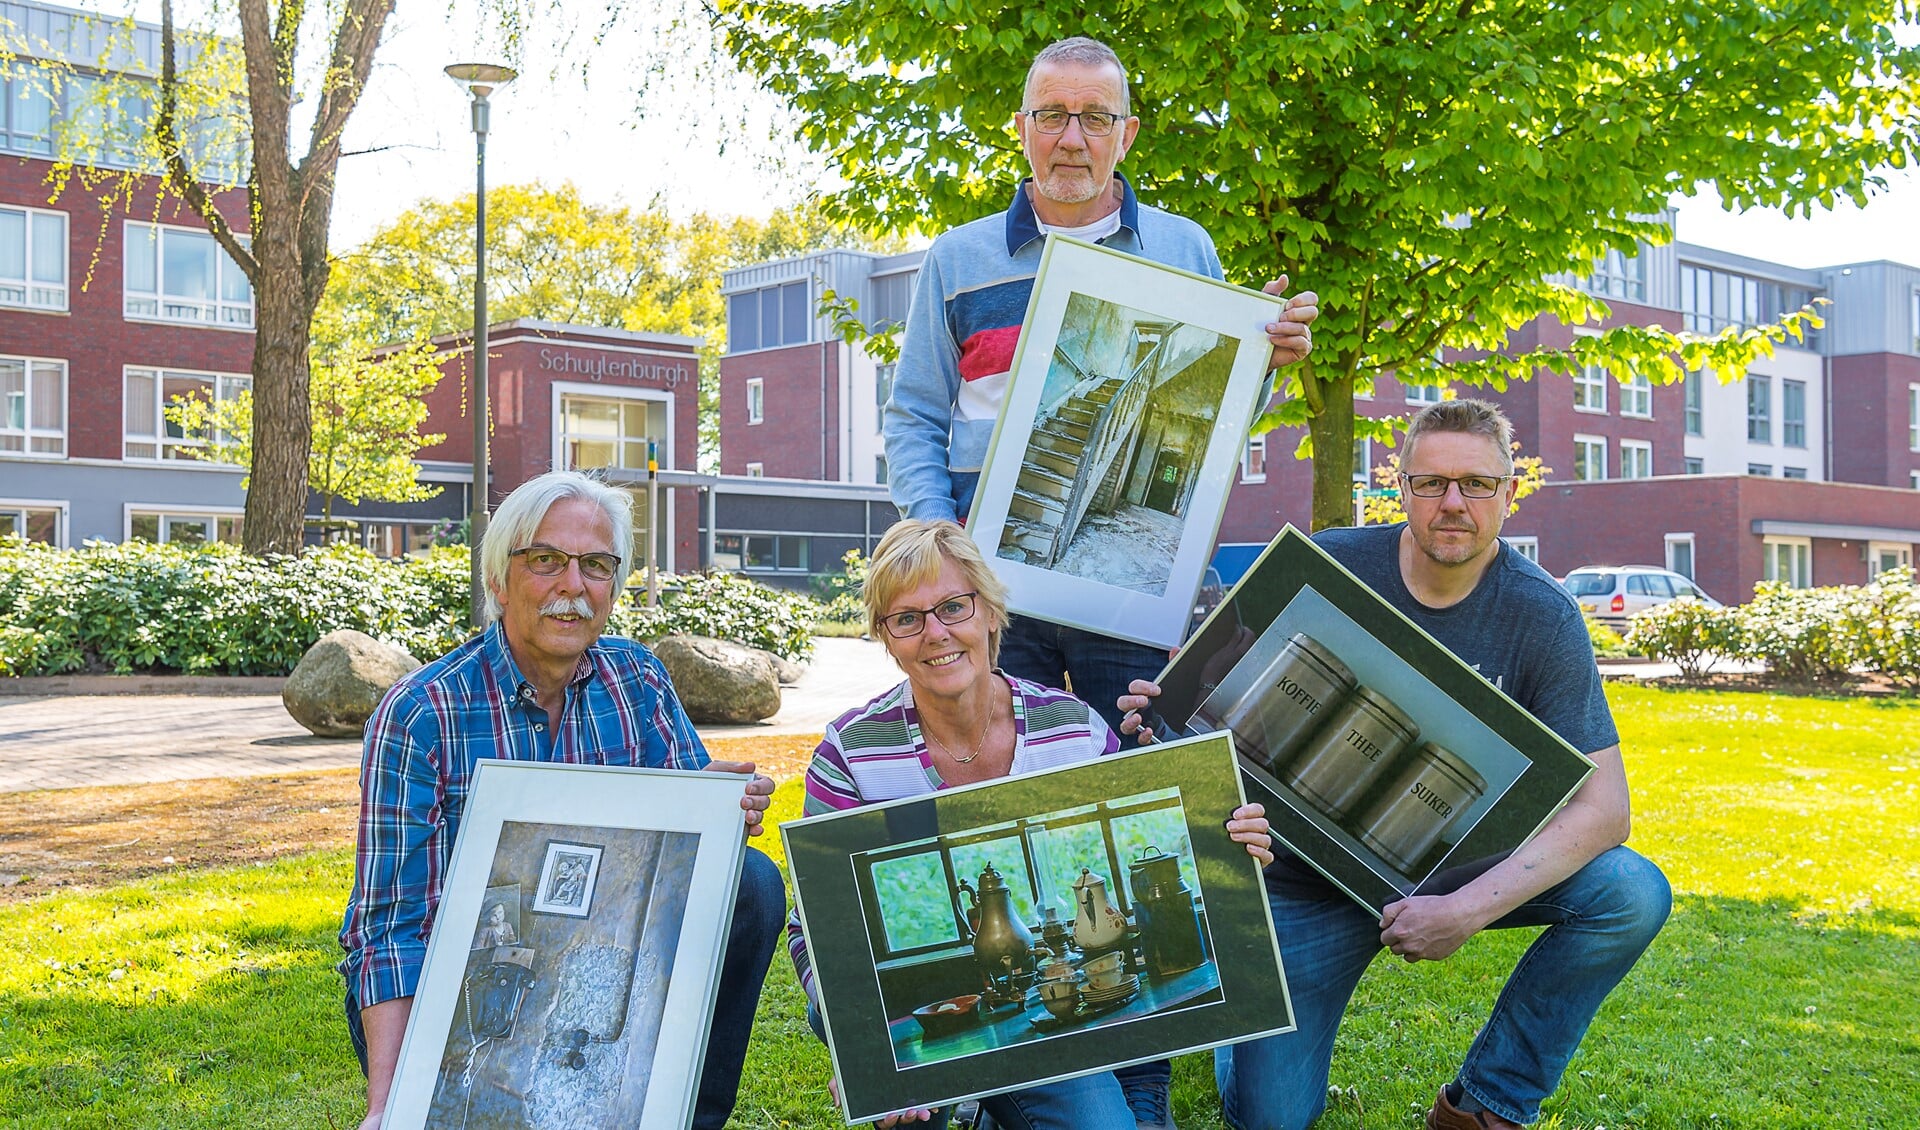 Fotogroep Gendringen brengt nostalgie naar Schuylenburgh. Foto: Henk van Raaij